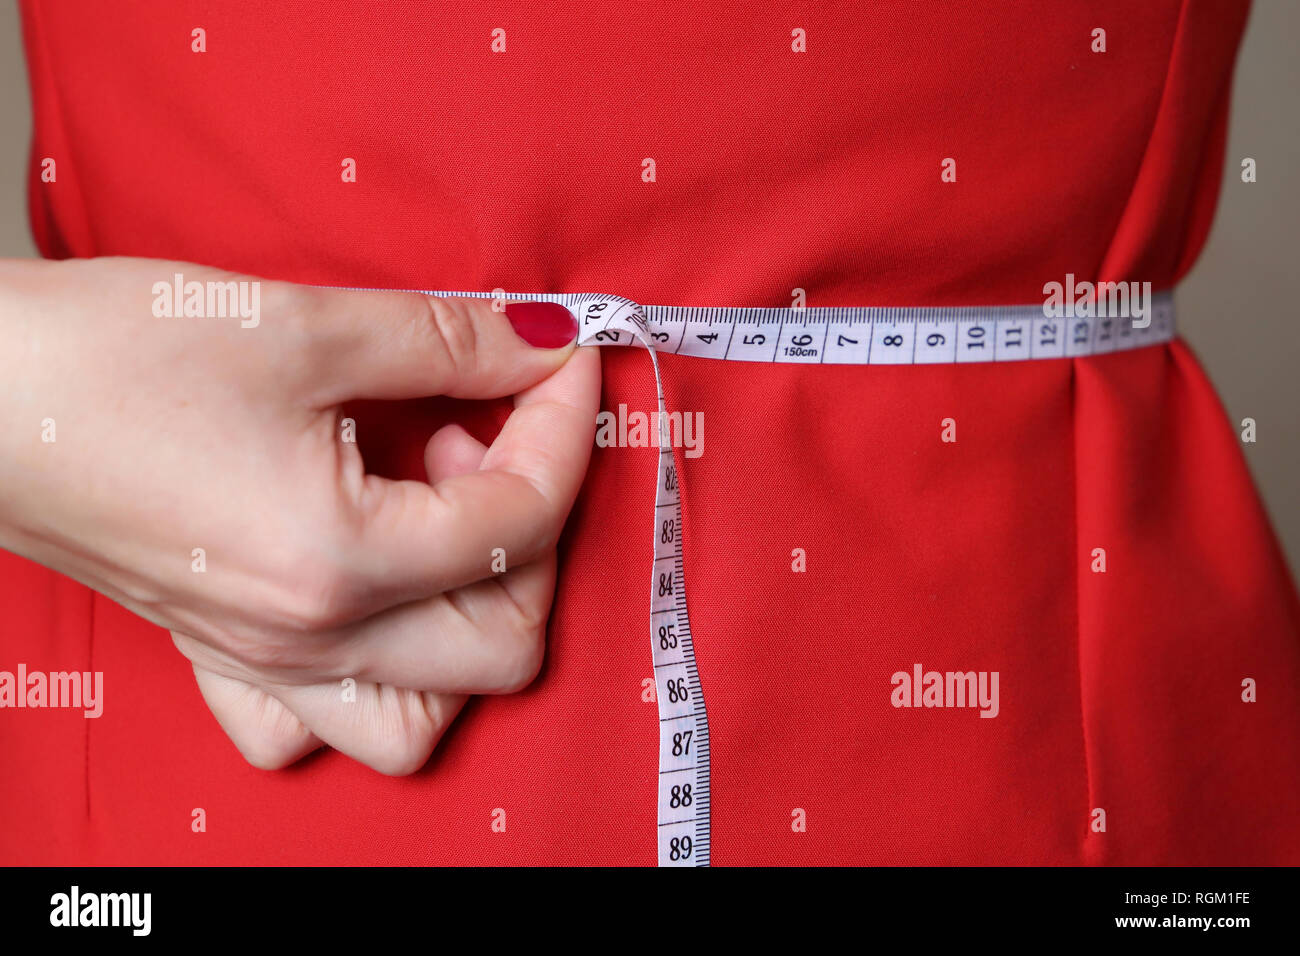 Concept de régime, femme en robe rouge avec un ruban à mesurer autour de la taille. La perte de poids, minceur, soins de santé Banque D'Images